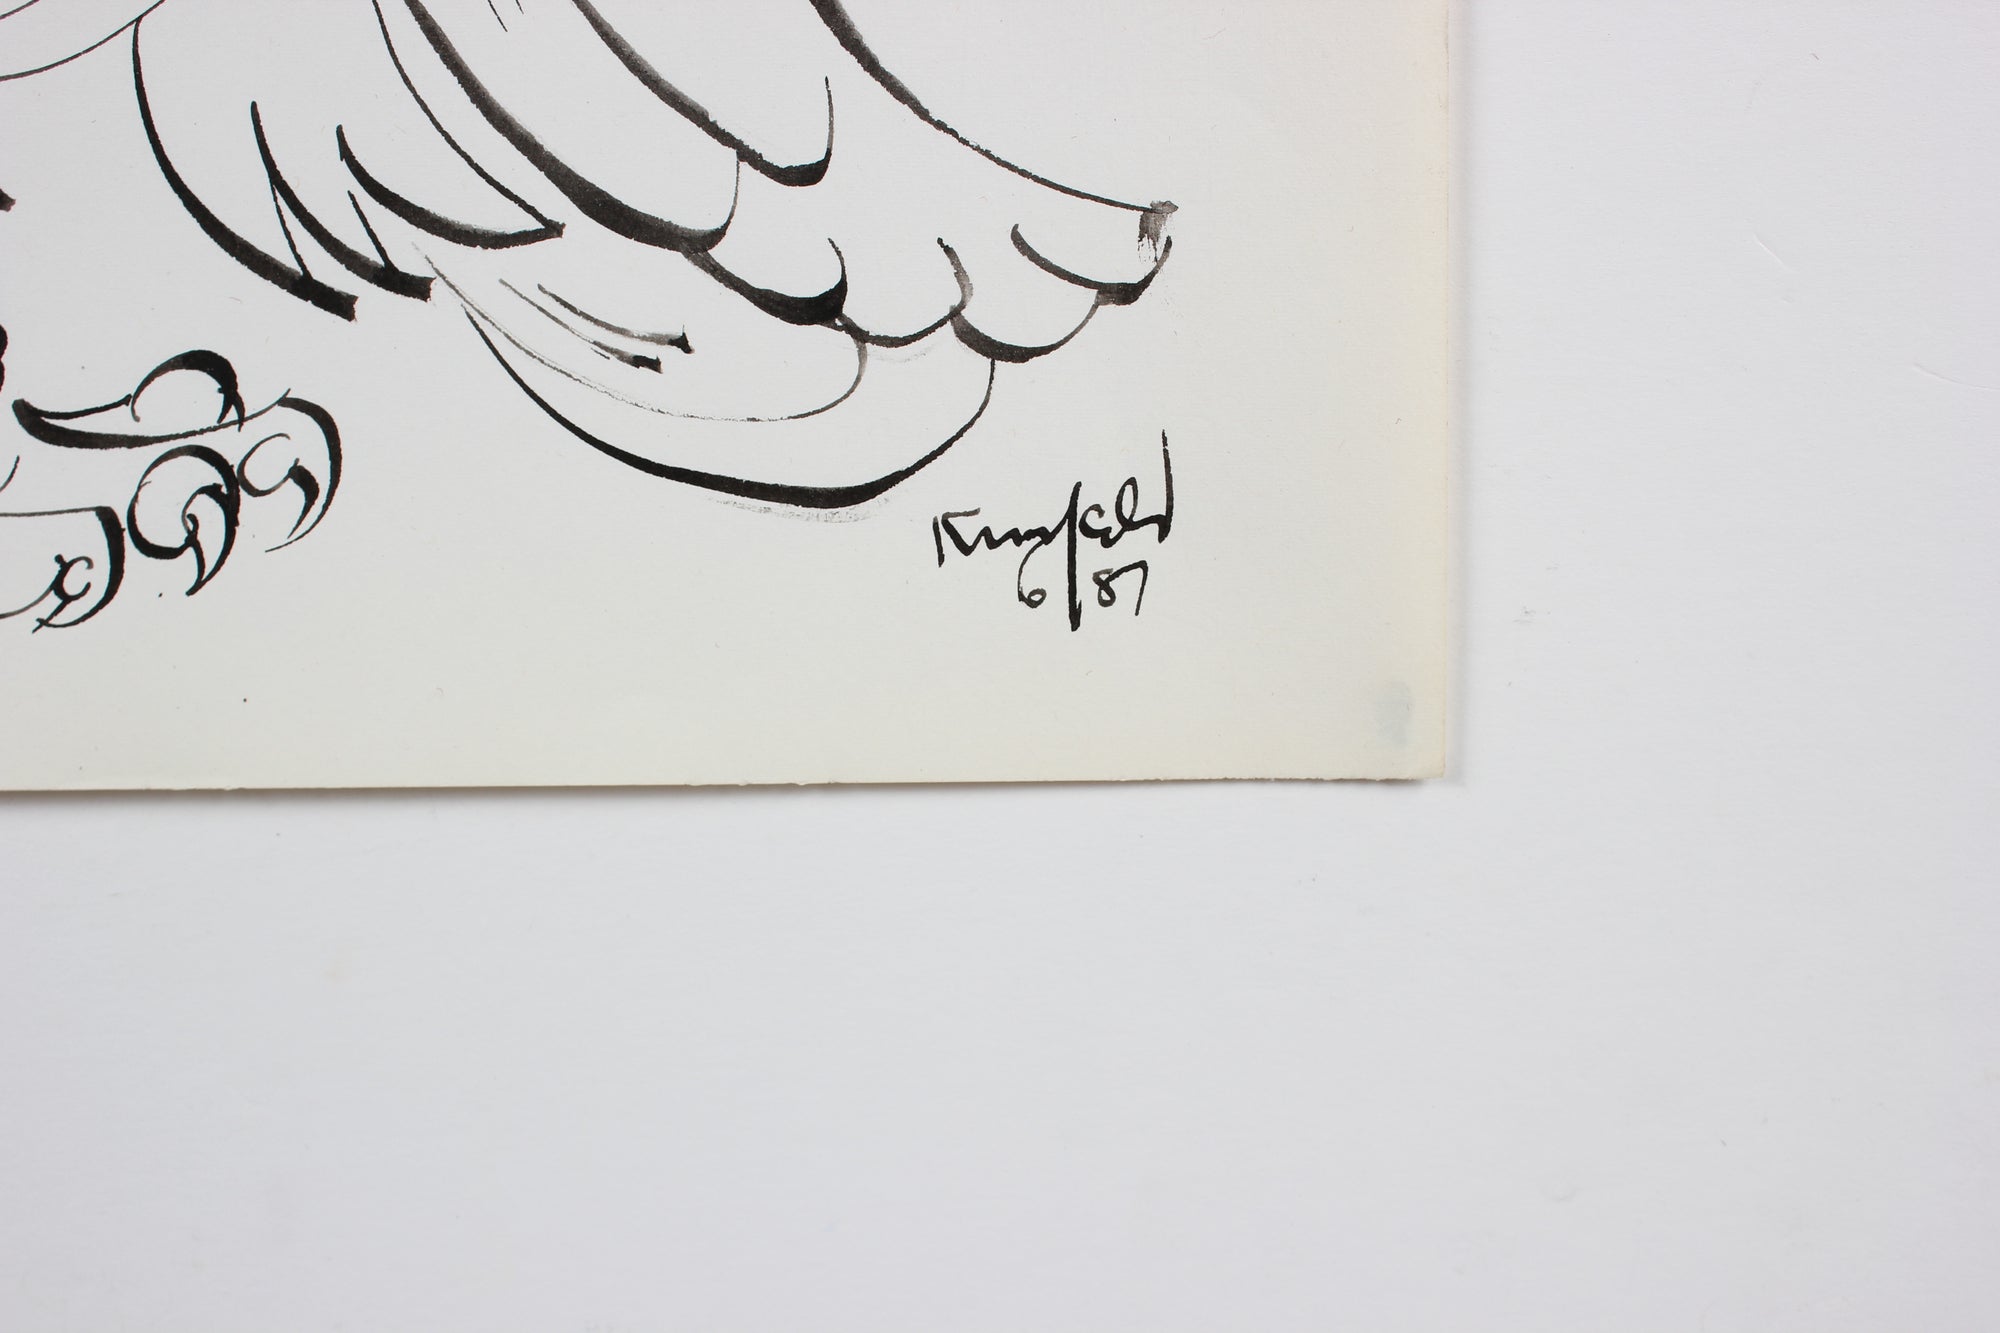 Regal Rooster <br>1987 Ink <br><br>#99476